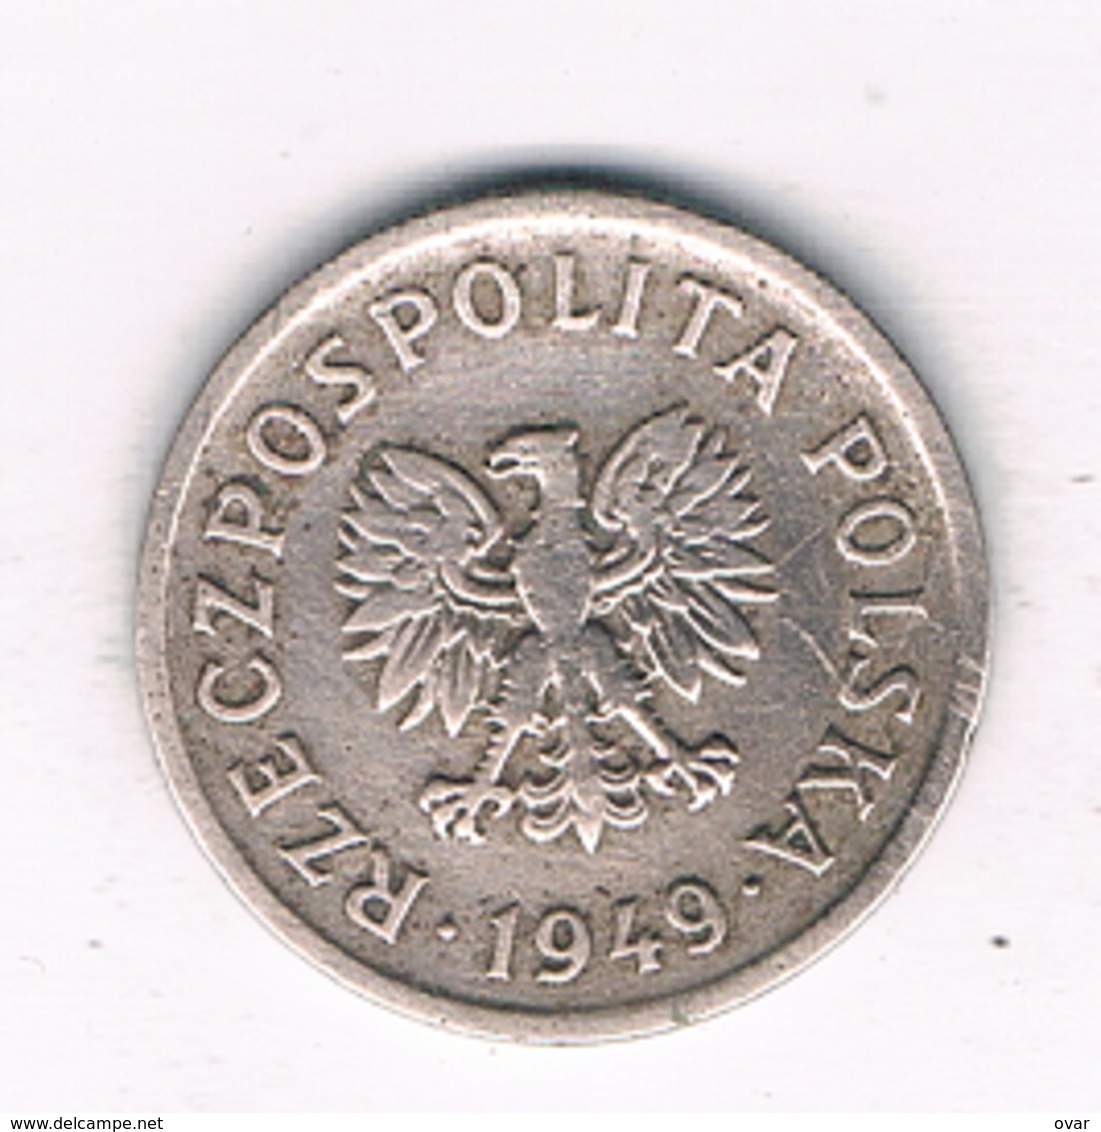 10 GROSZY 1949 POLEN /6226/ - Poland